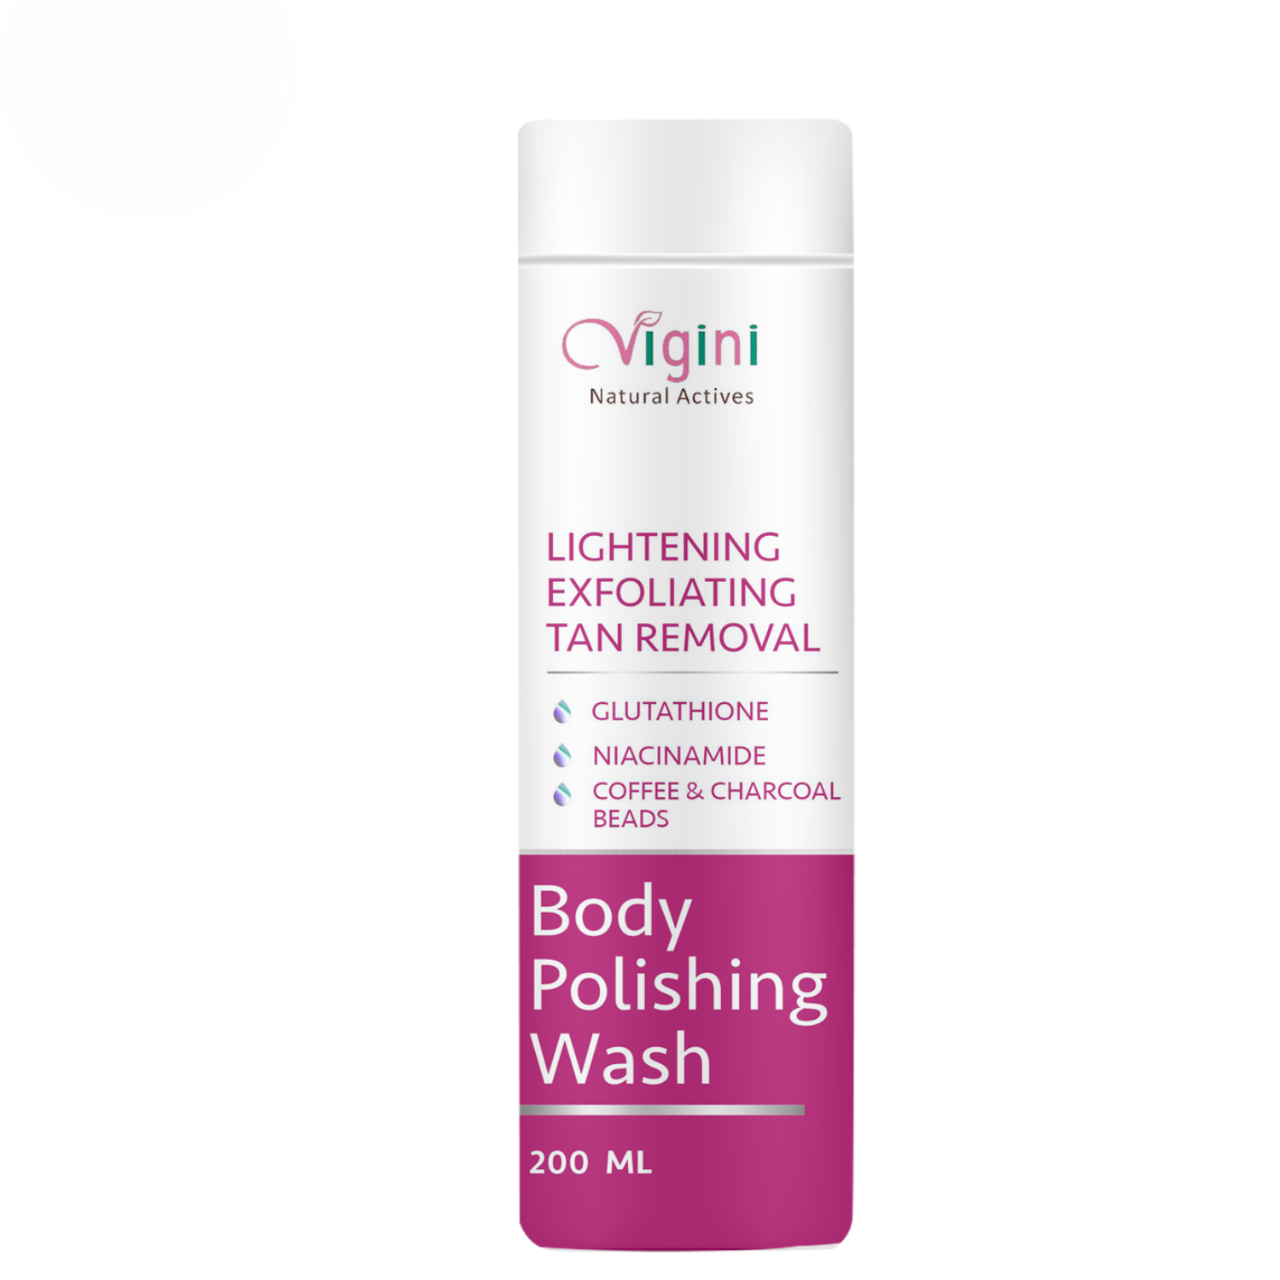 Vigini Lightening Brightening Body Polishing Wash for Men Women - BUDNE